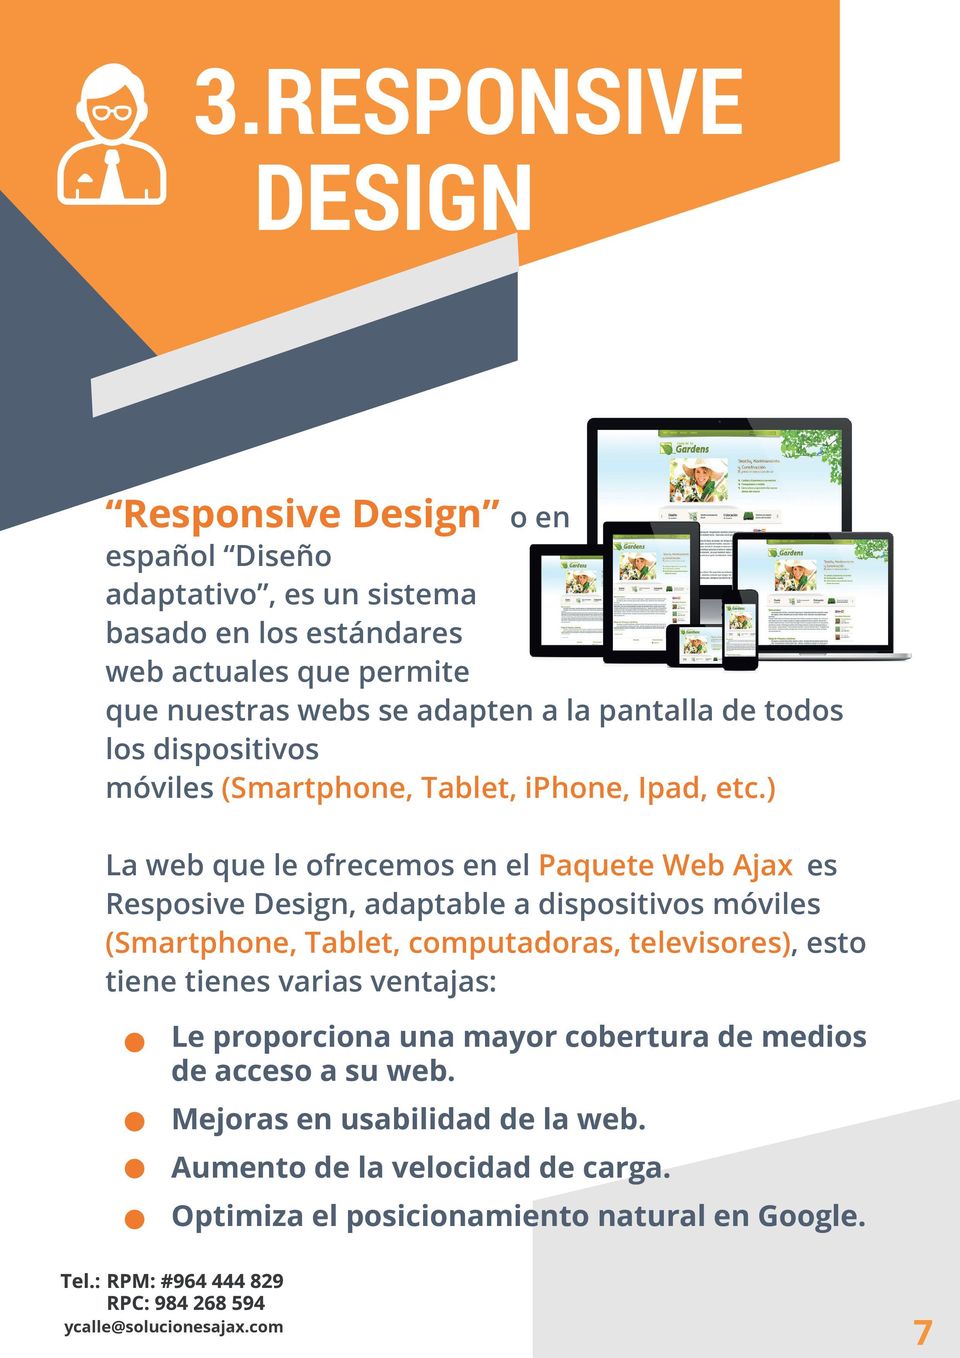 ) La web que le ofrecemos en el Paquete Web Ajax es Resposive Design, adaptable a dispositivos móviles (Smartphone, Tablet, computadoras, televisores),